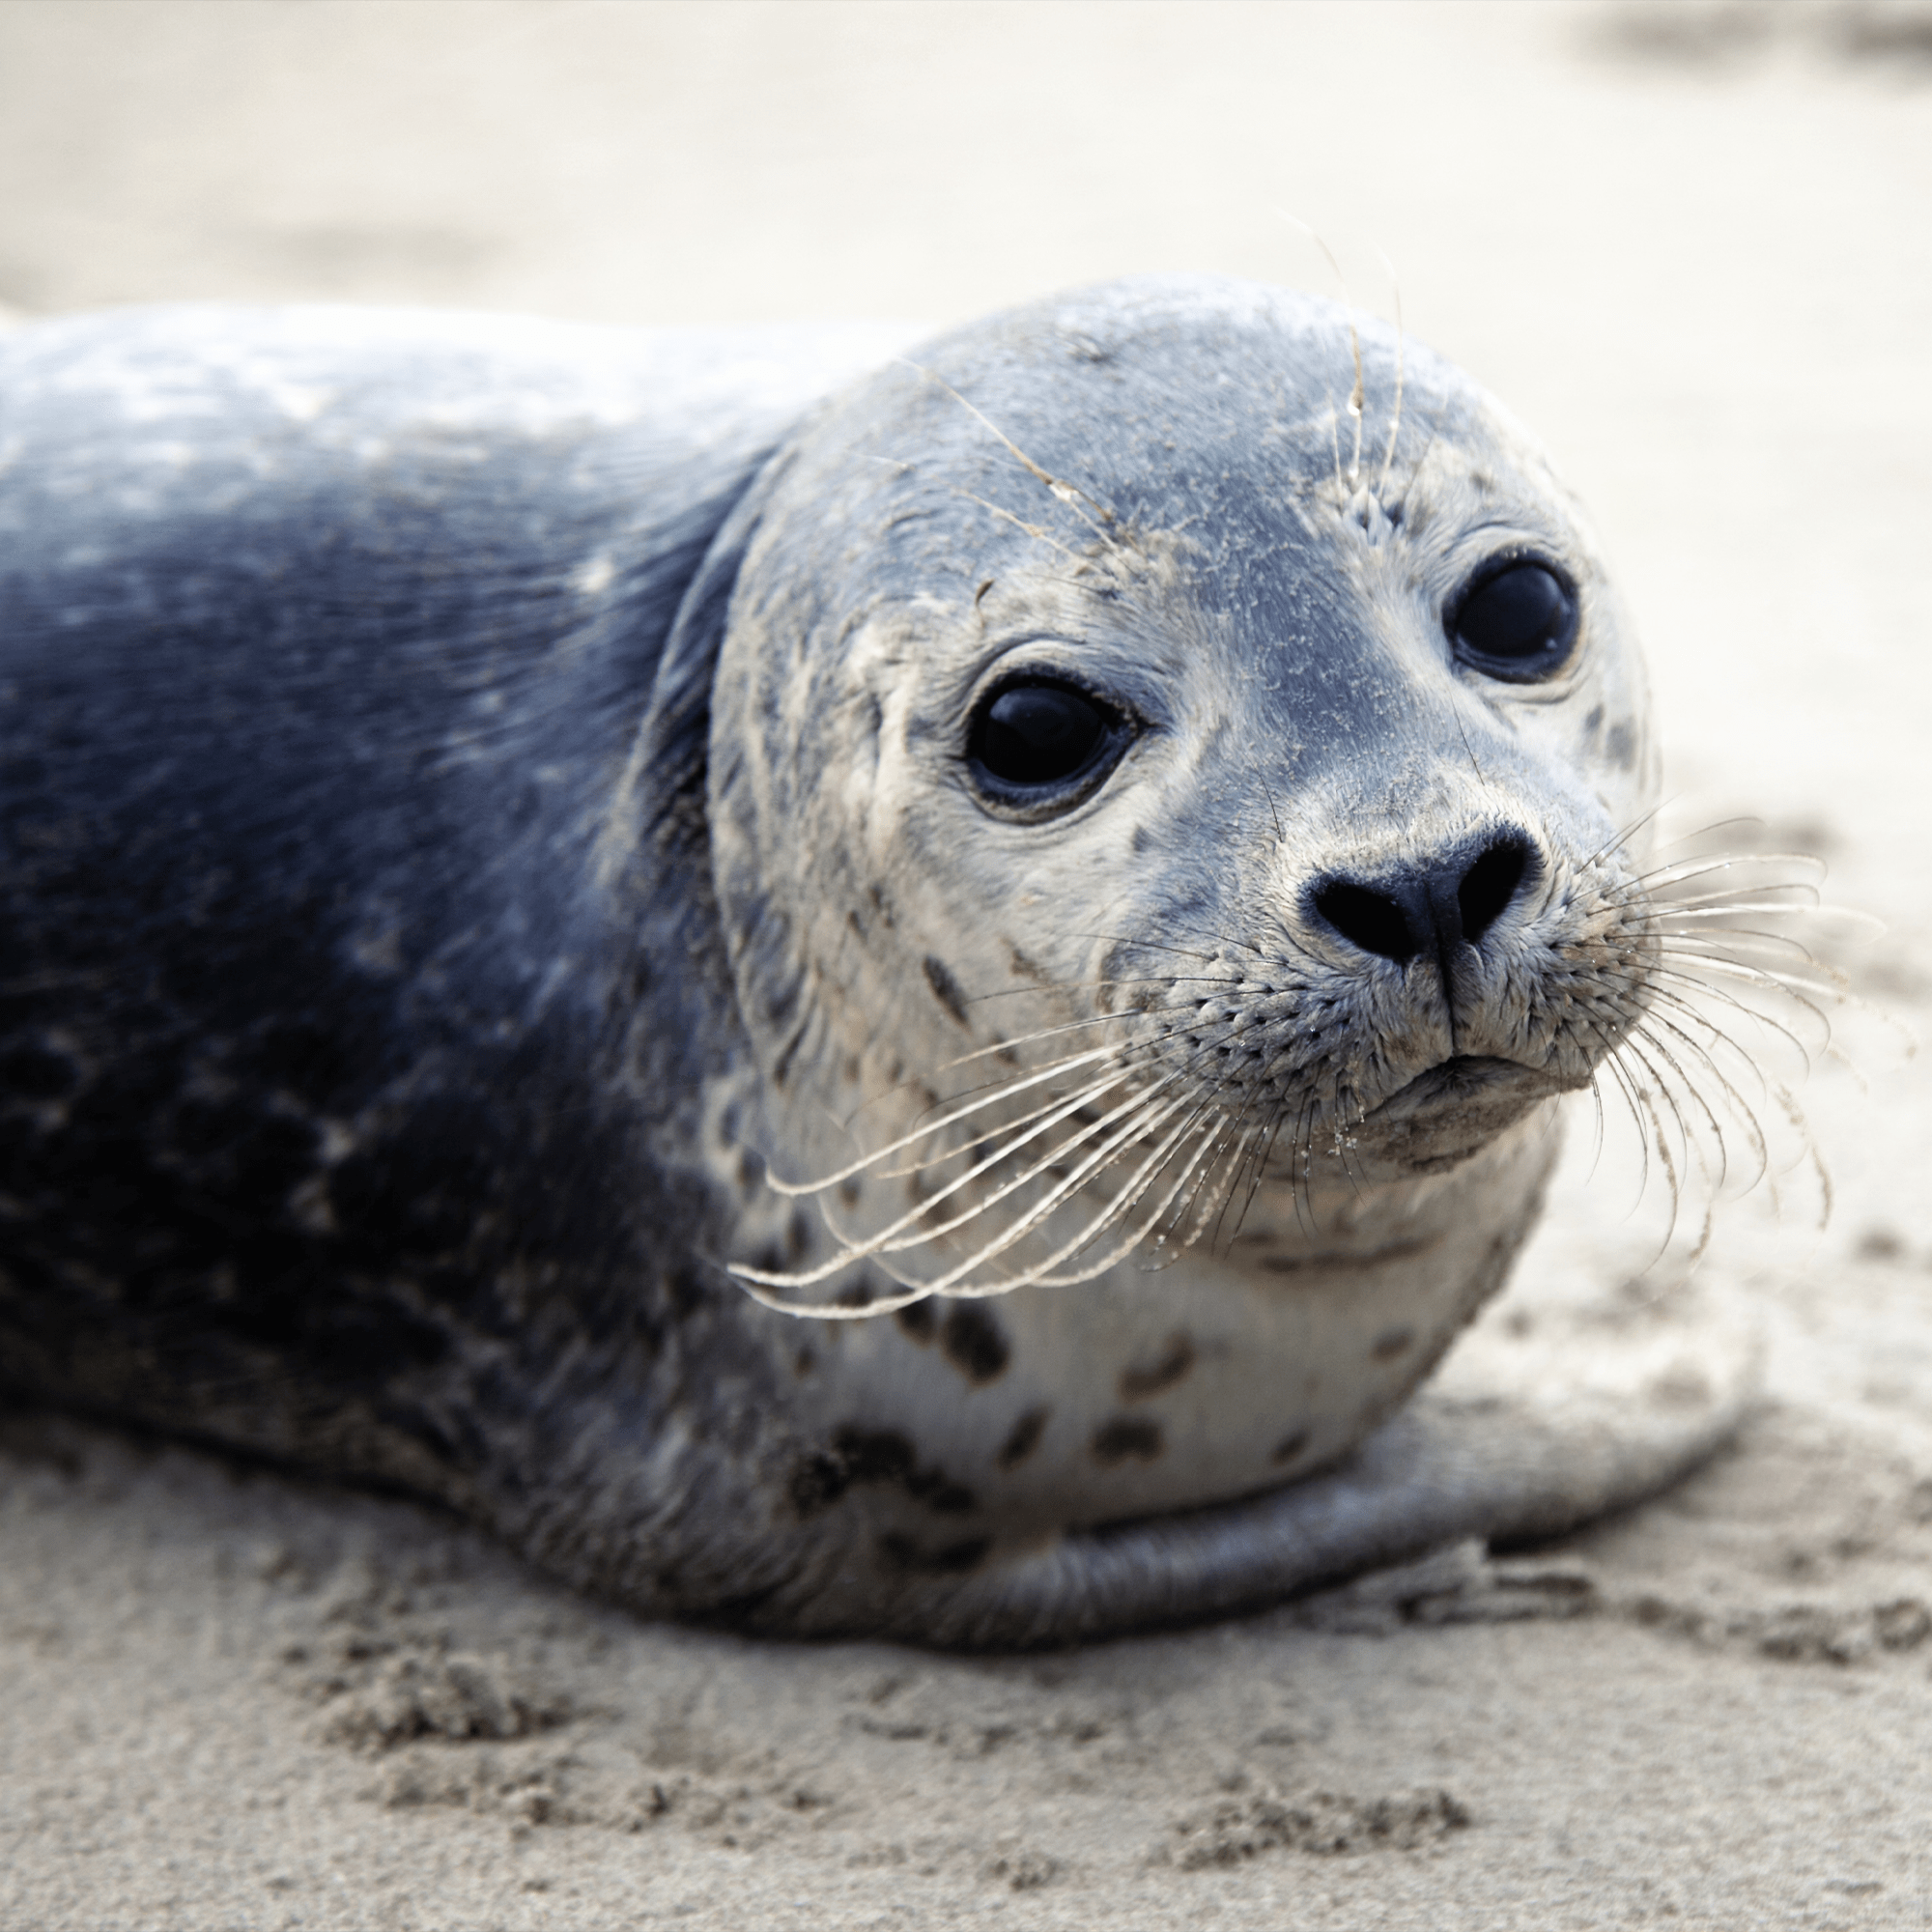 Harbor Seal Adoption Kit